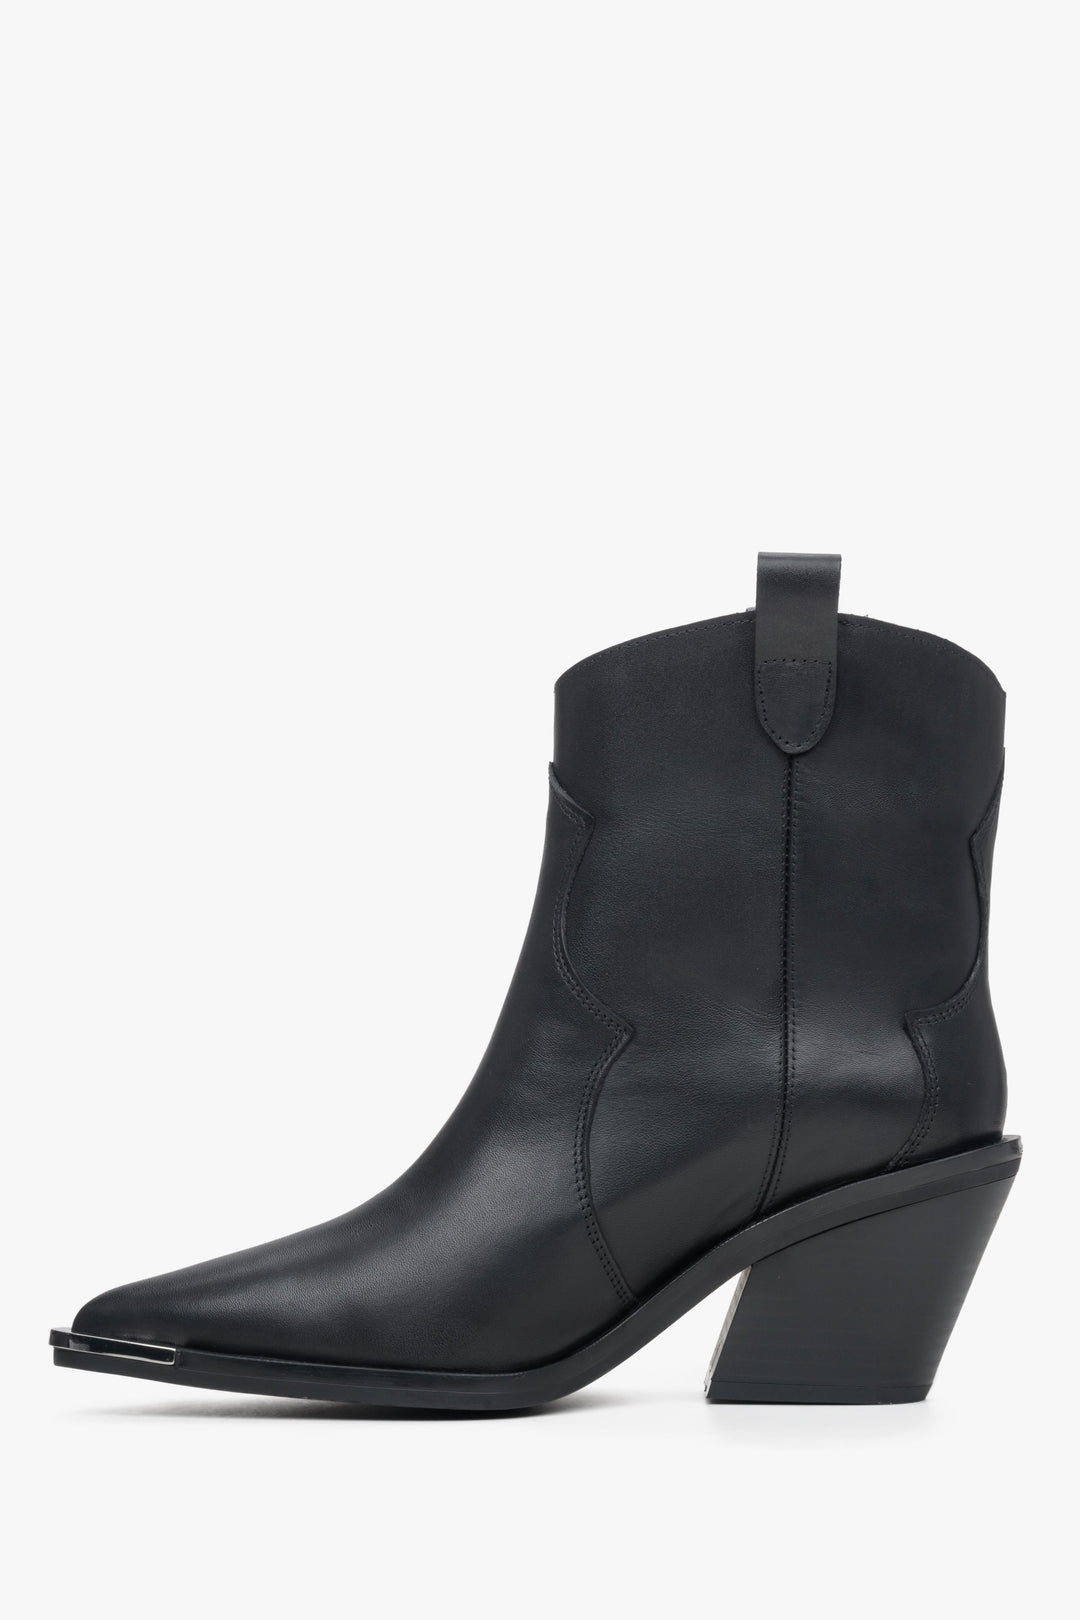 Black leather cowboy boots Estro - shoe profile.